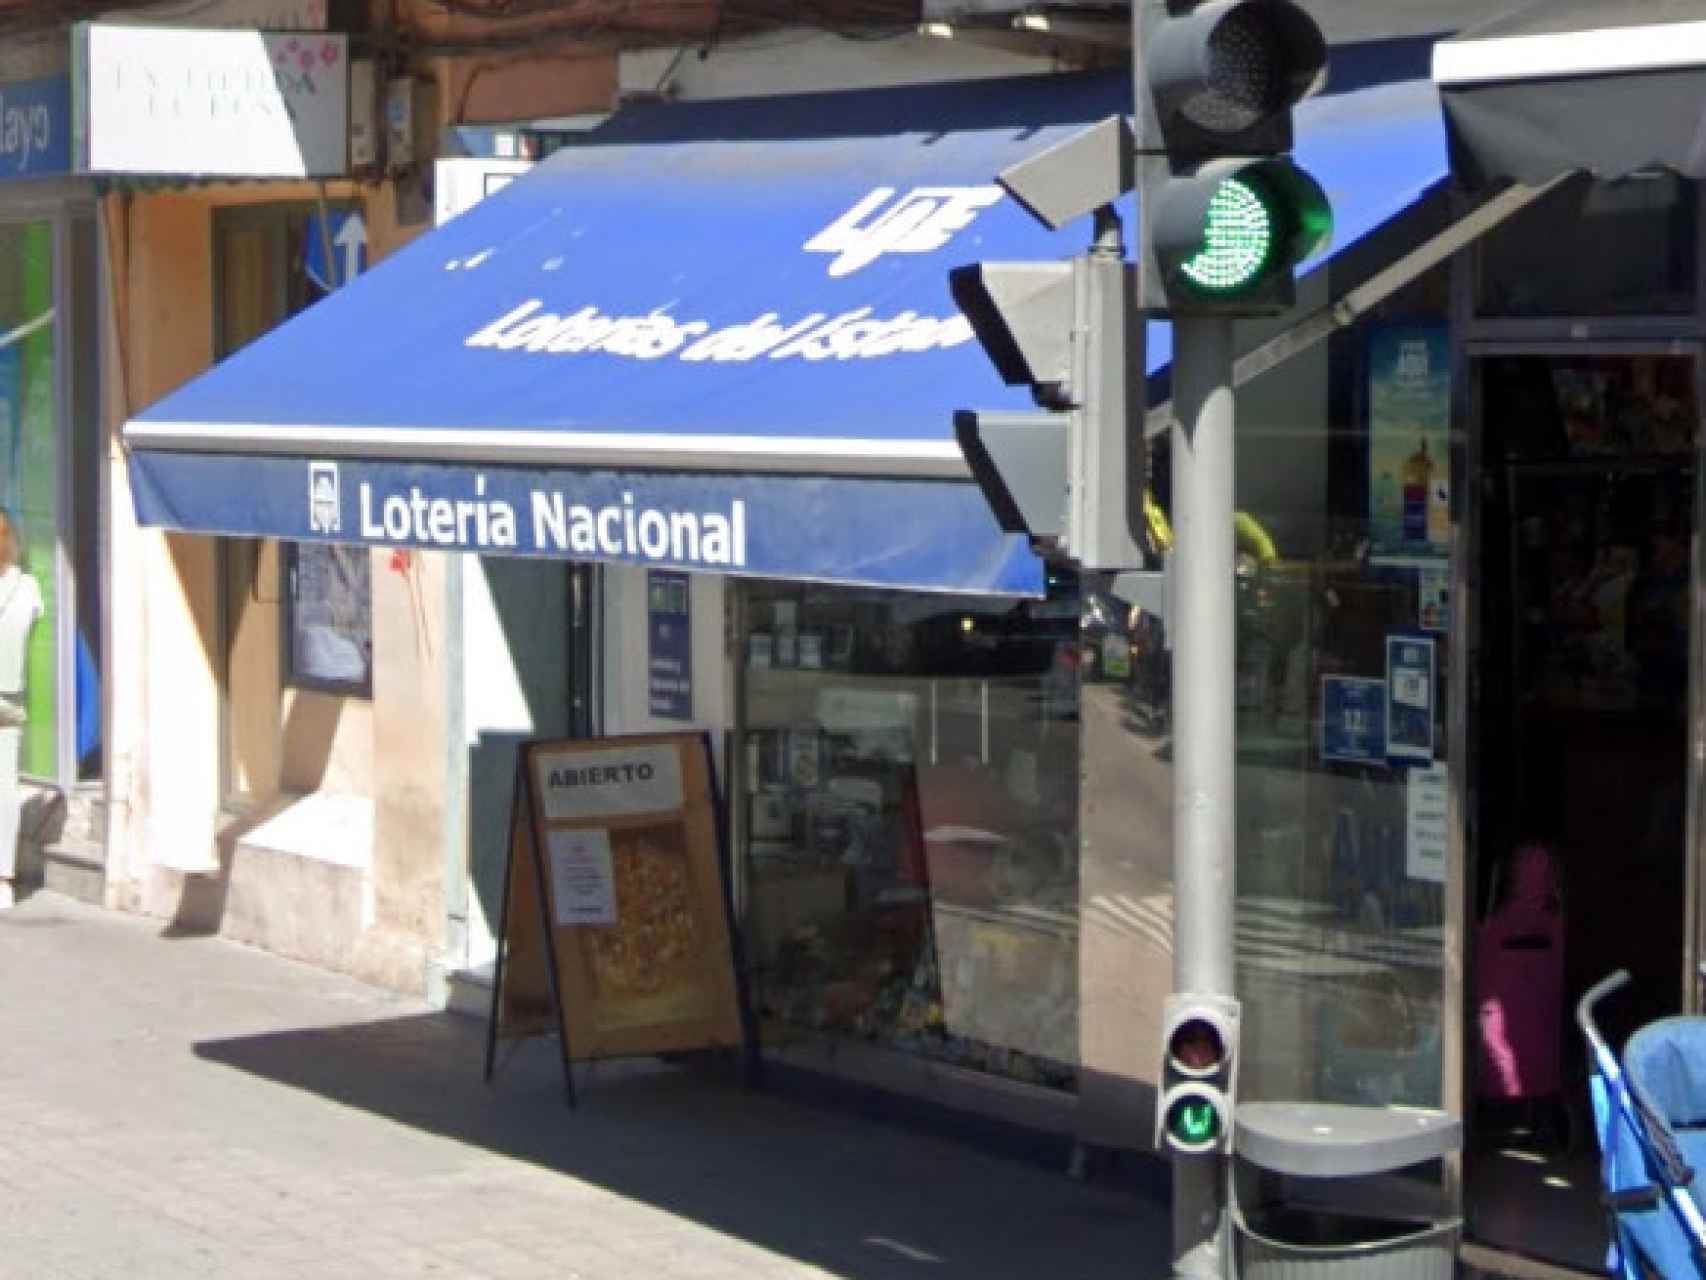 El despacho en el que se ha vendido el boleto premiado, en la Plaza de los Vadillos de Valladolid.